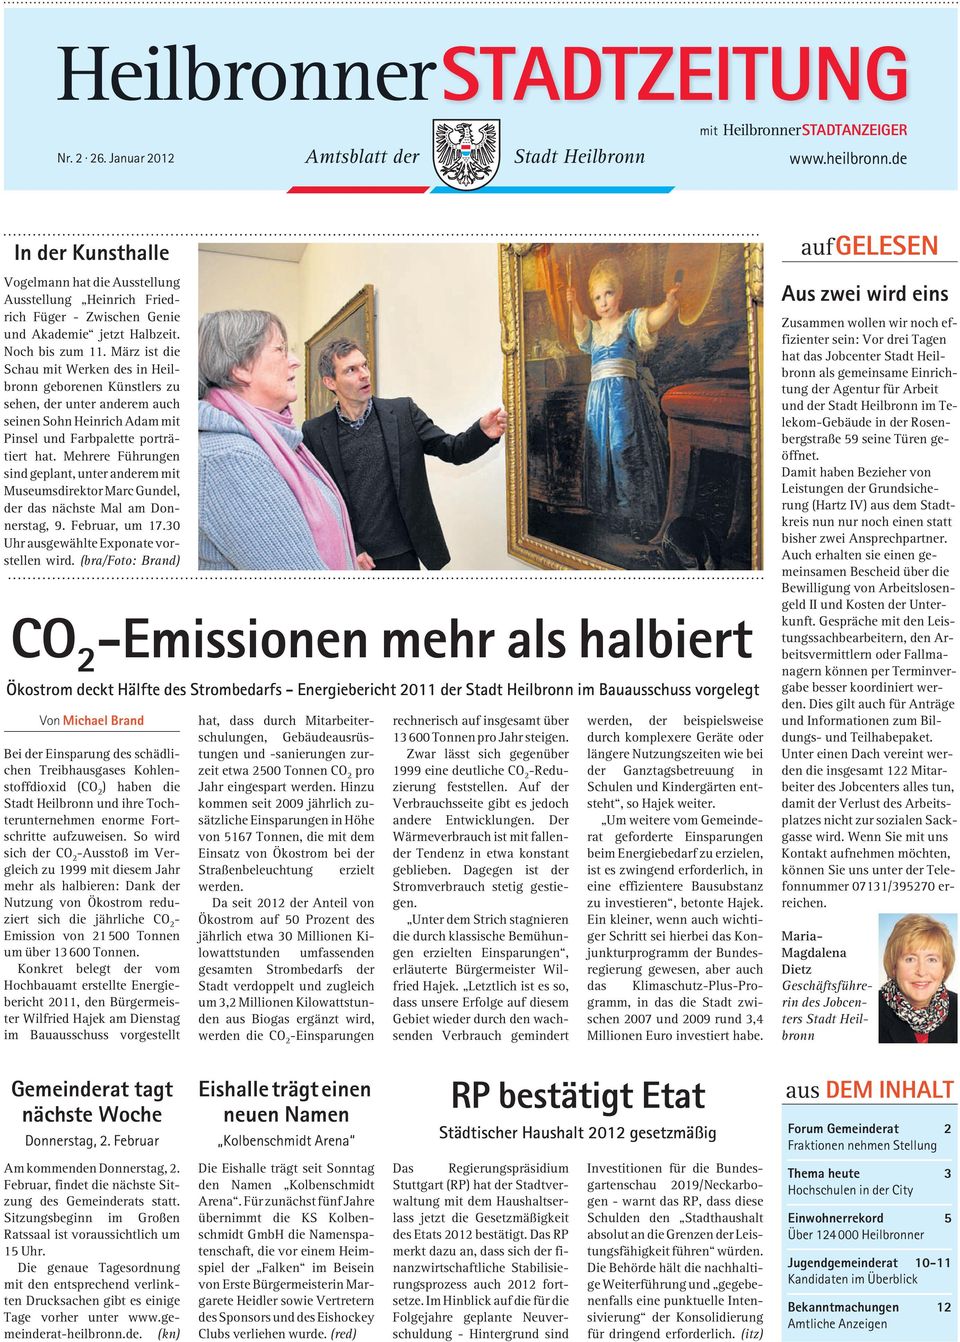 März ist die Schau mit Werken des in Heilbronn geborenen Künstlers zu sehen, der unter anderem auch seinen Sohn Heinrich Adam mit Pinsel und Farbpalette porträtiert hat.